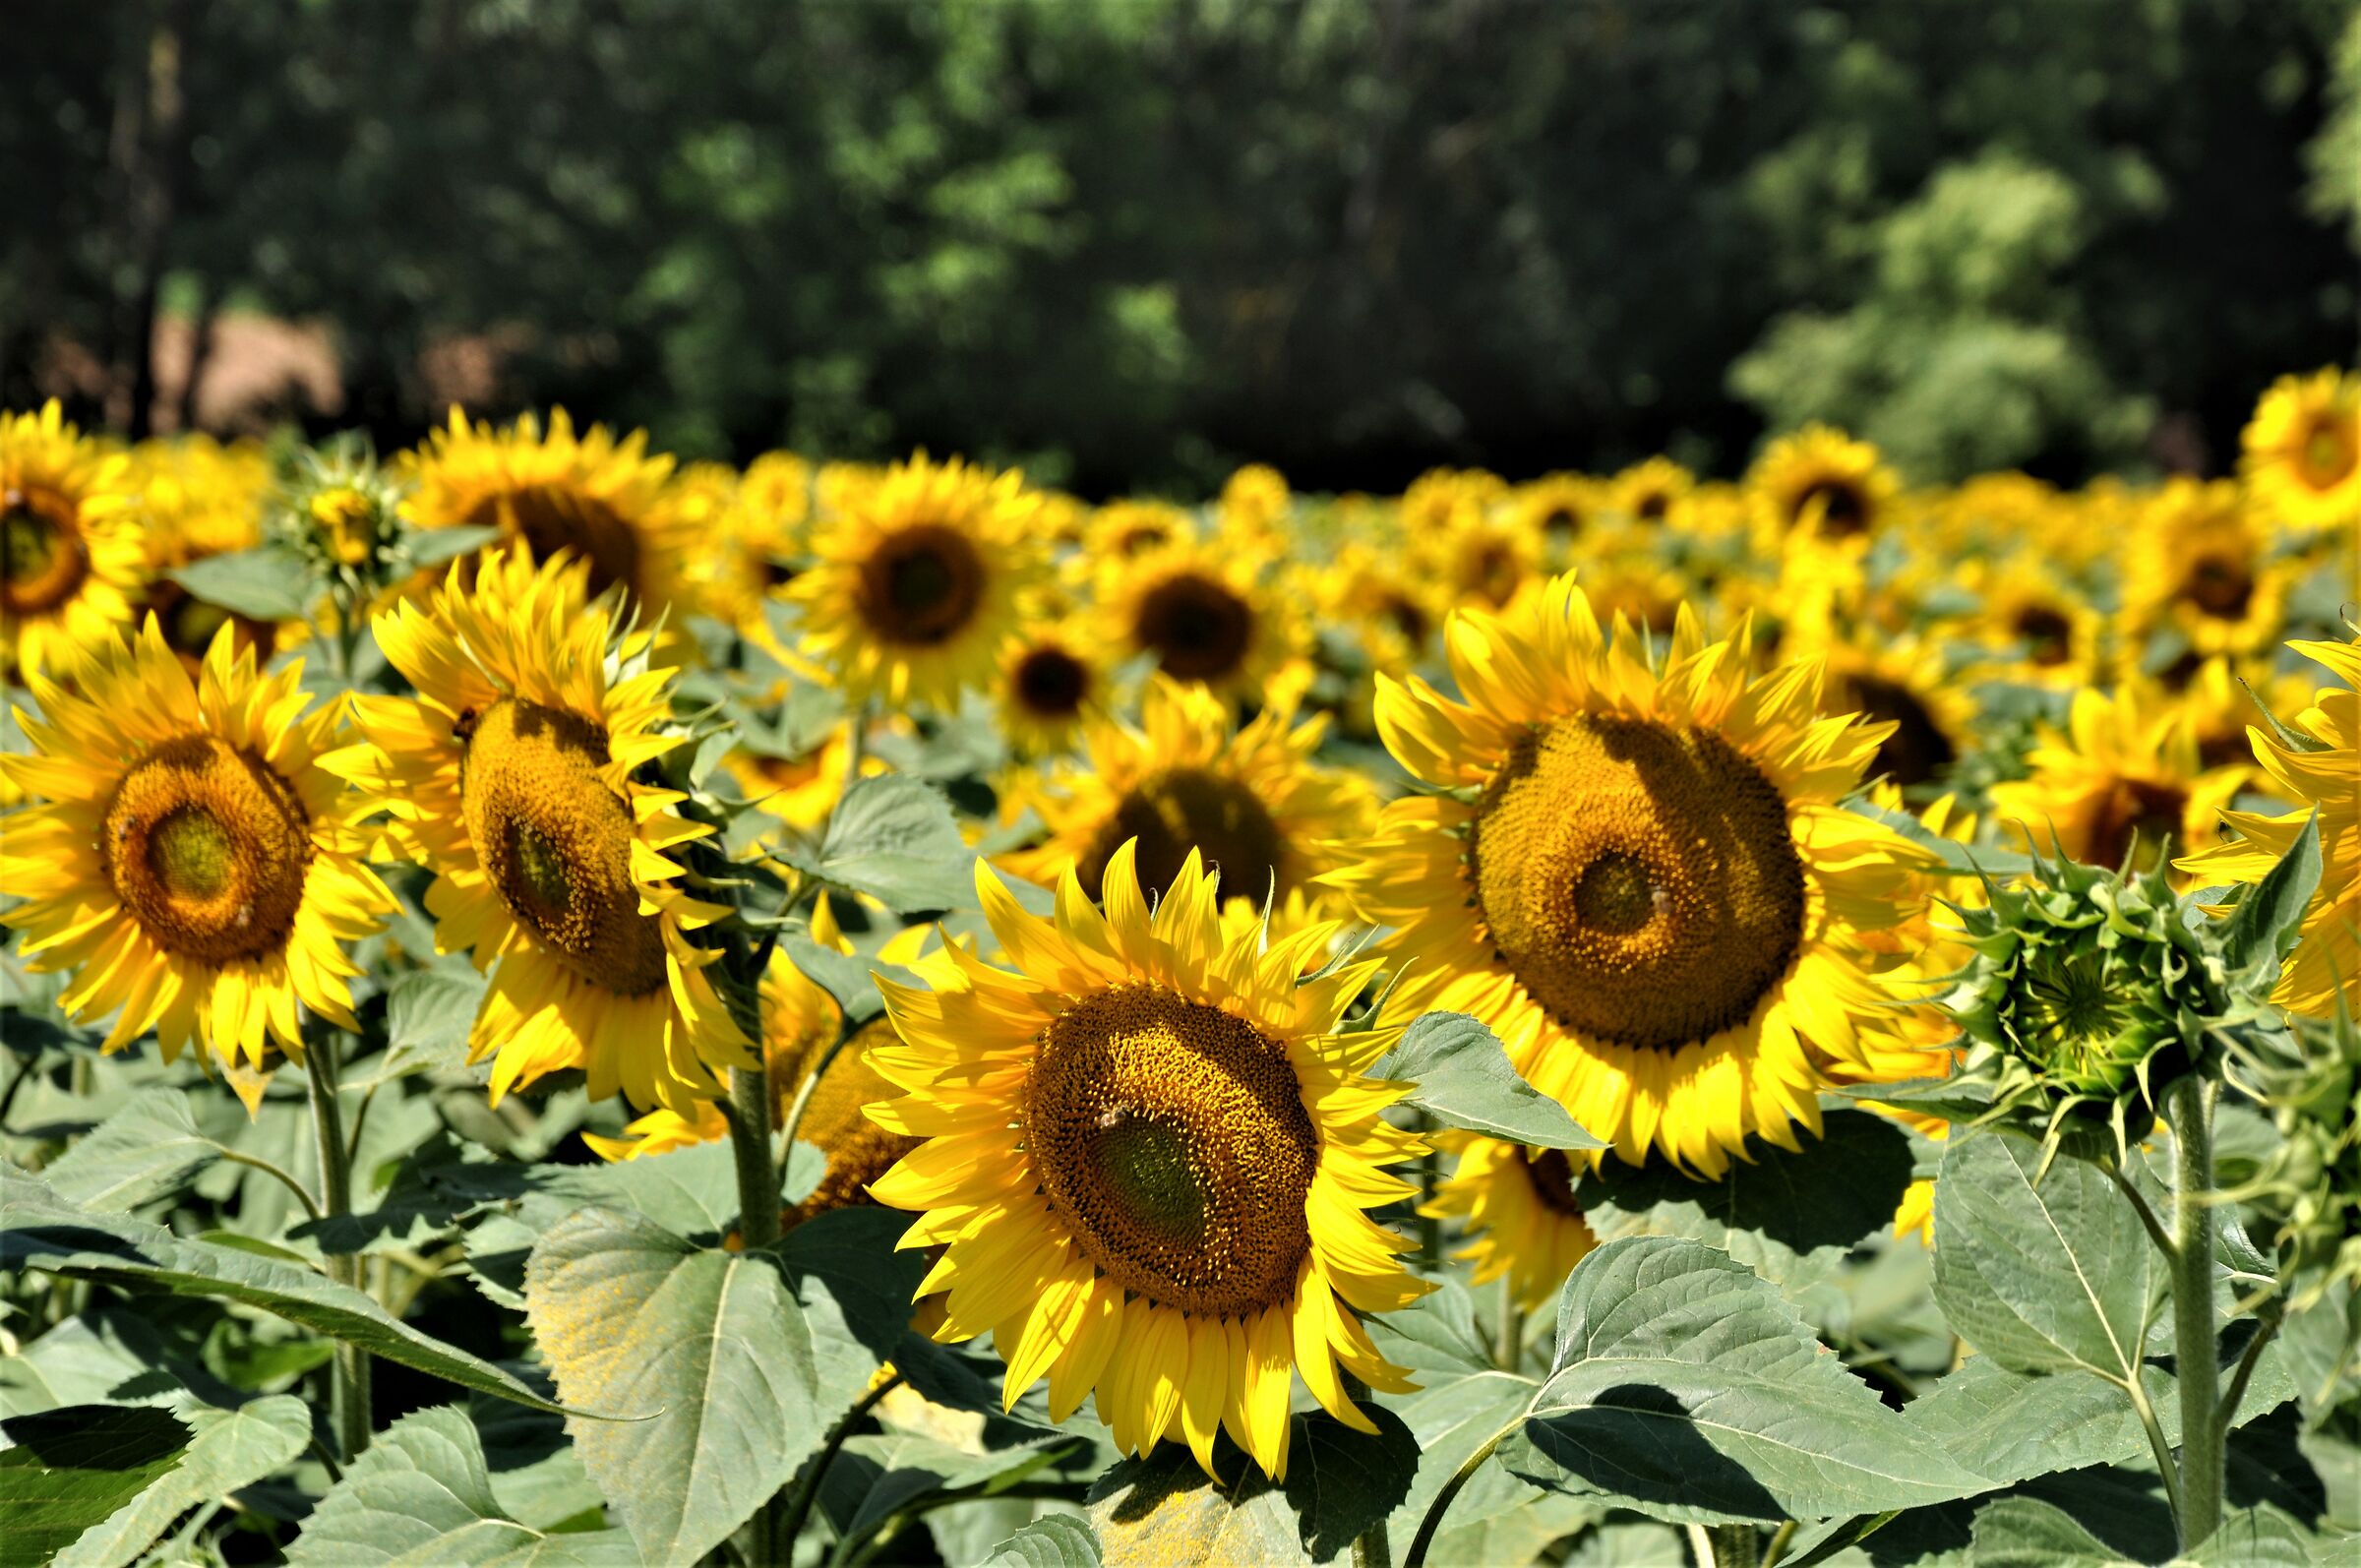 Sunflowers in Altavilla Monferrato...